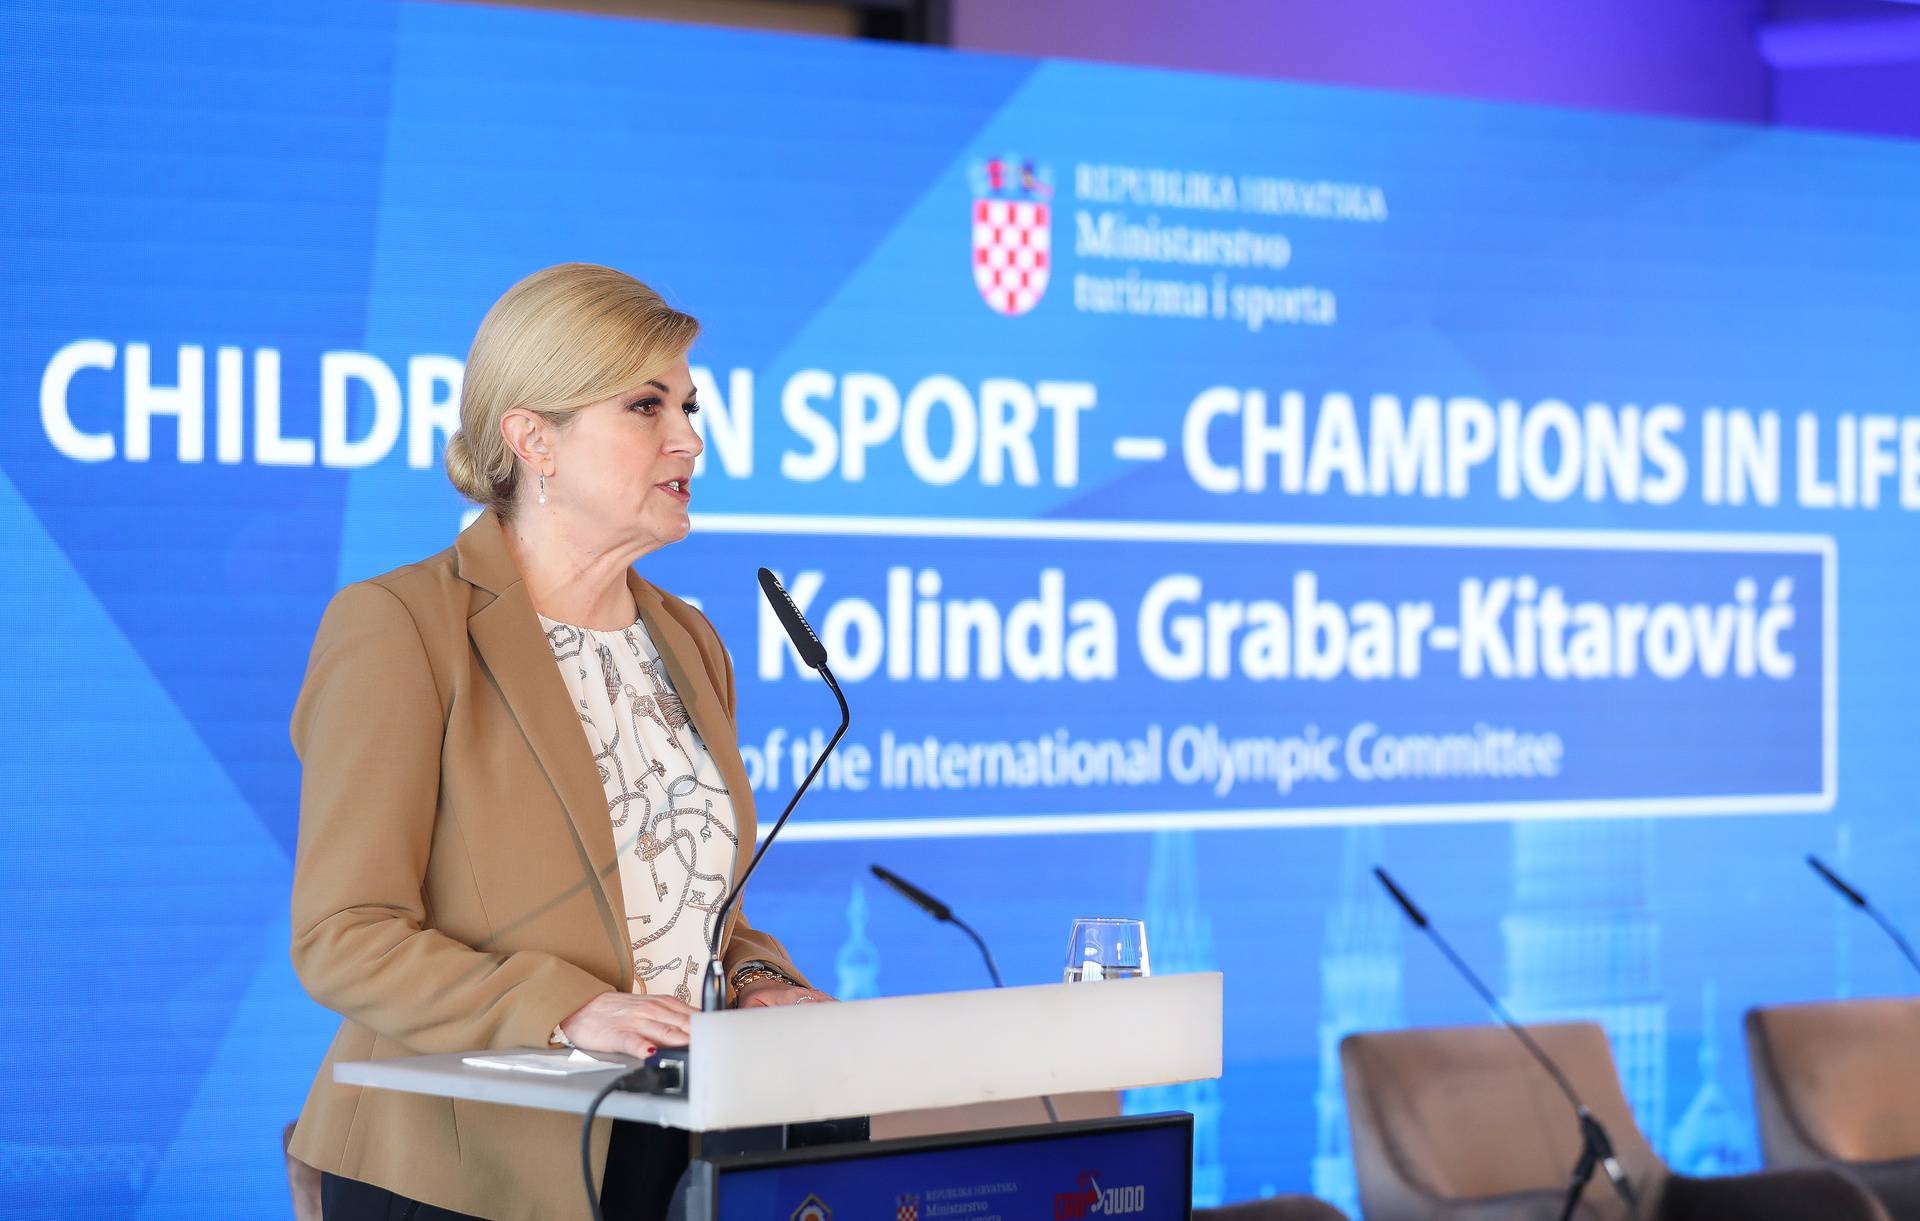 Zagreb: Konferencija "Djeca u sportu - šampioni u životu"